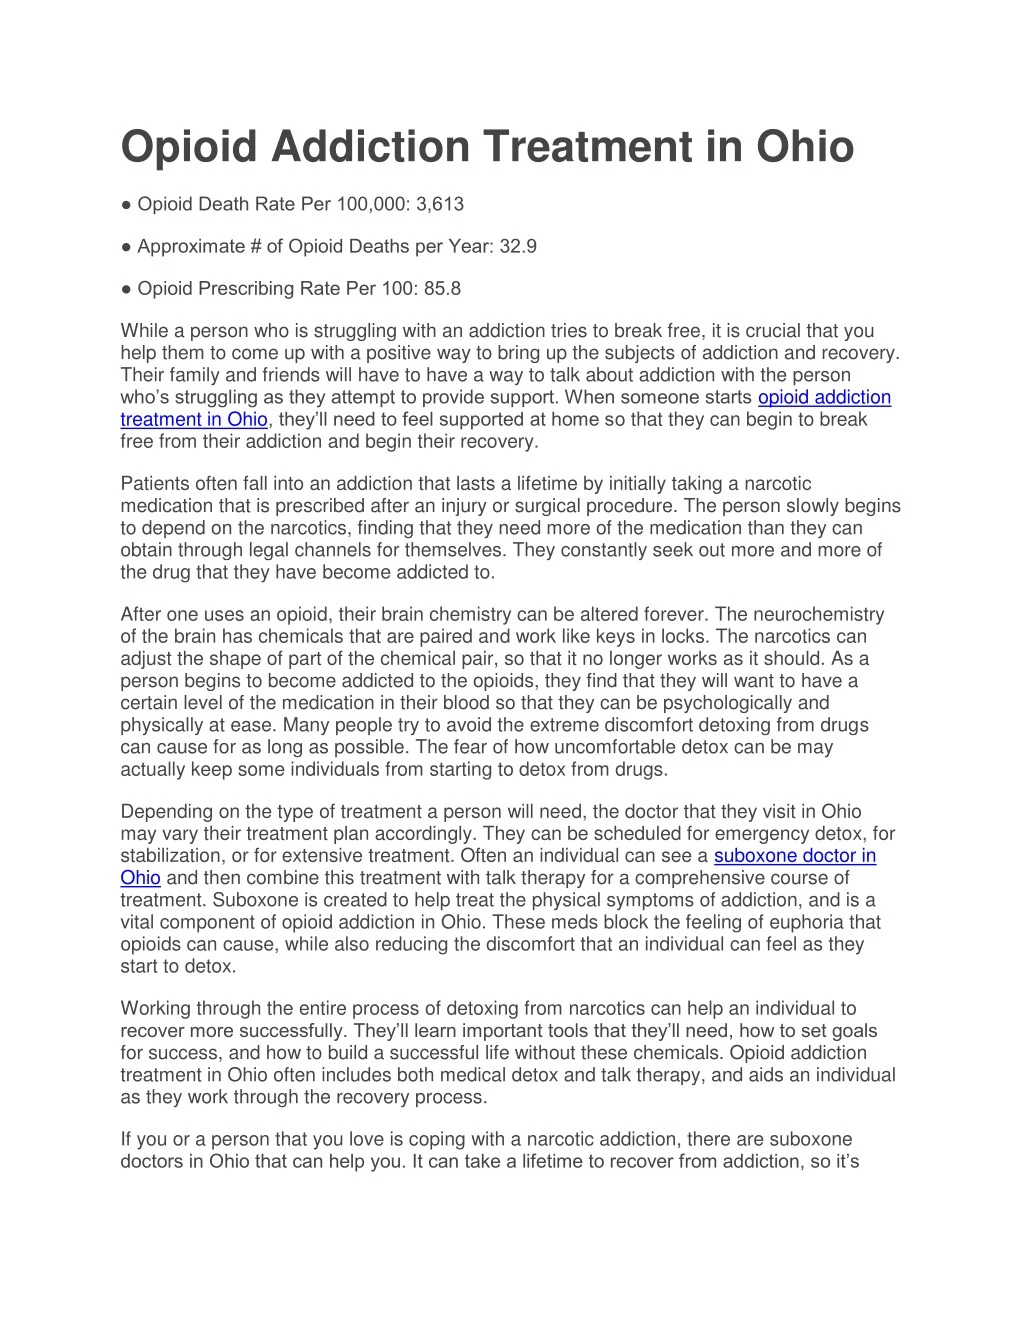 opioid addiction treatment in ohio opioid death